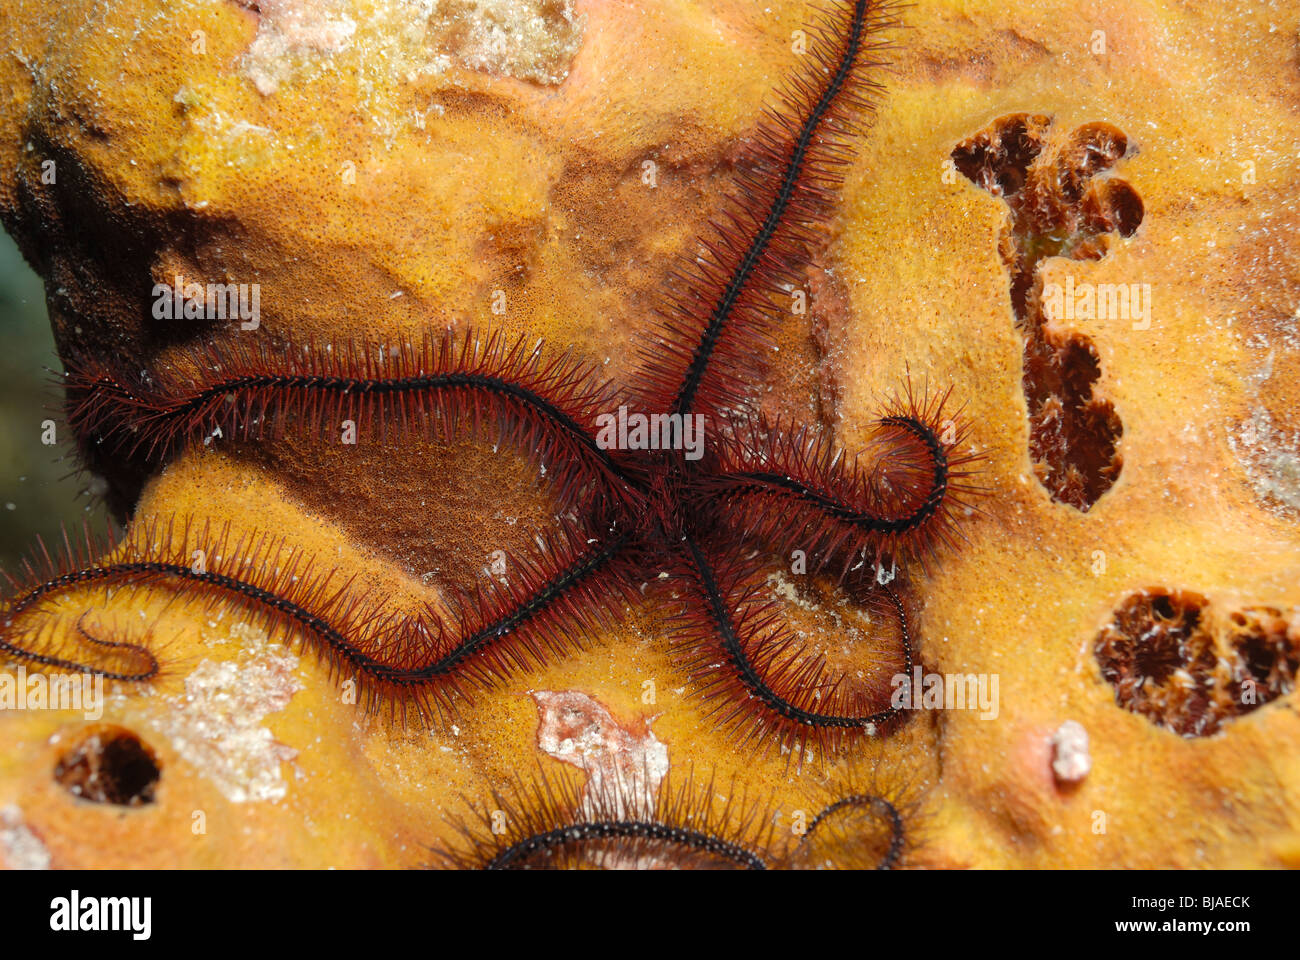 Sponge brittle star off Martinique. Stock Photo